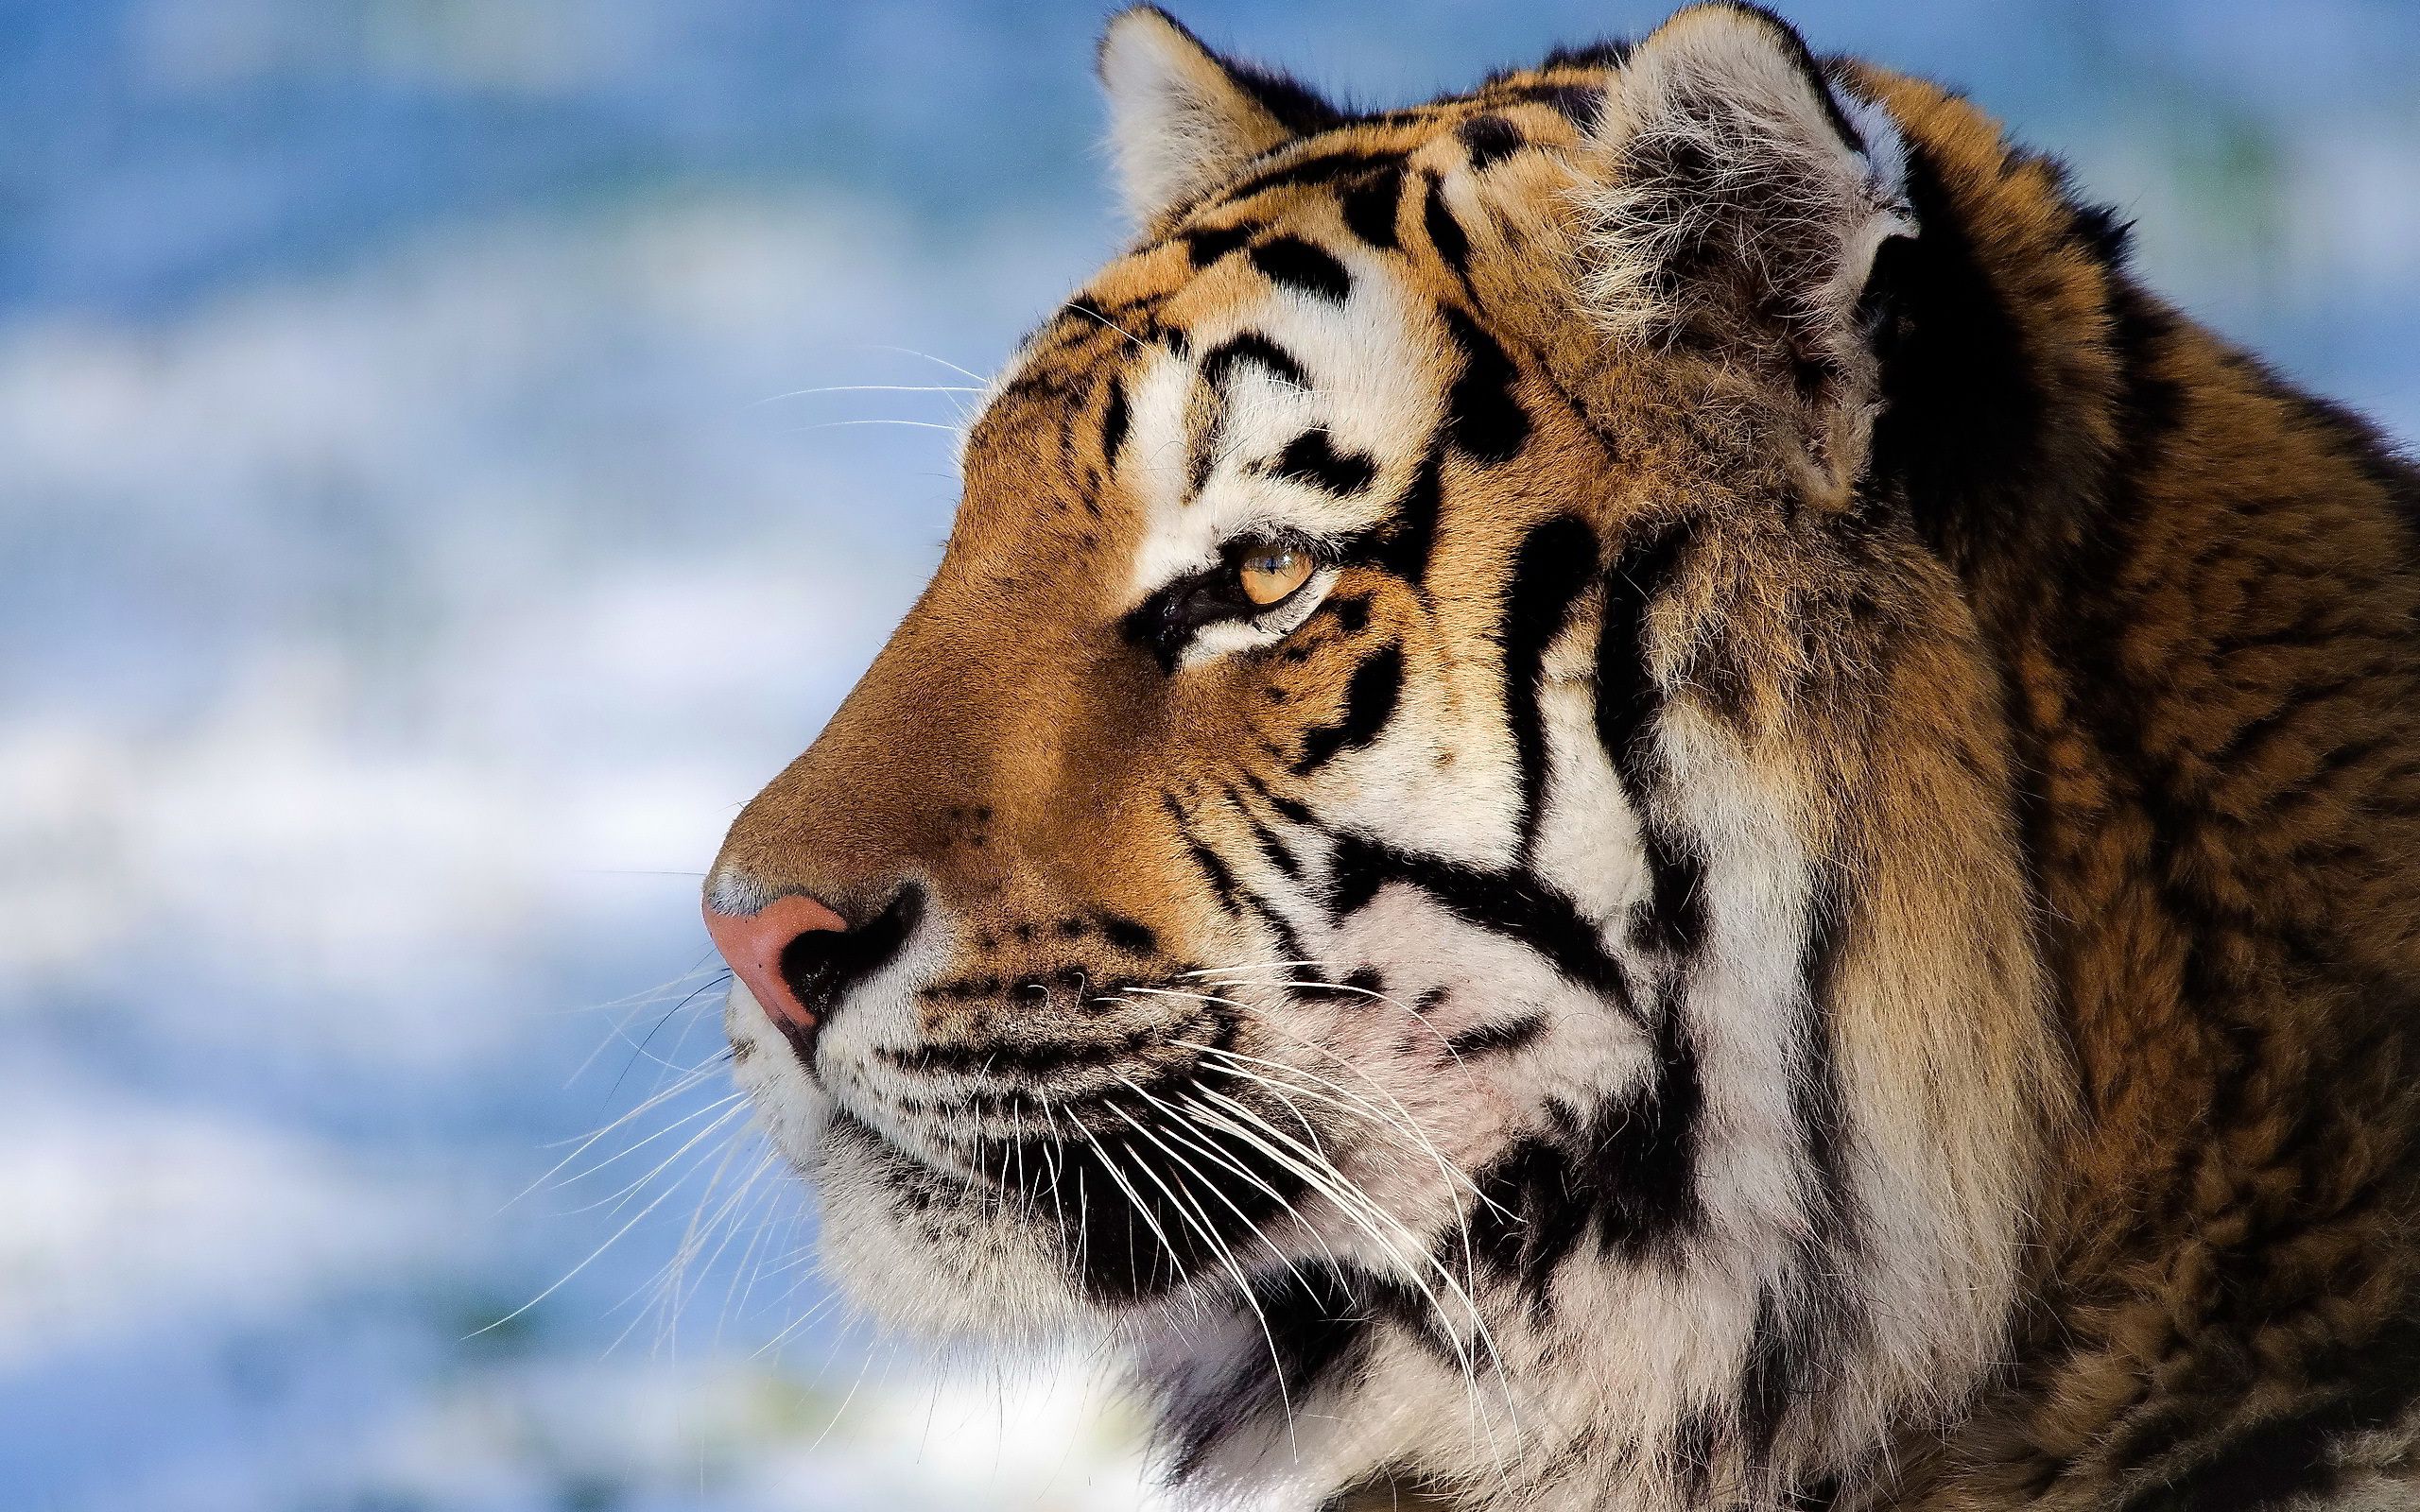 Closeup tiger face